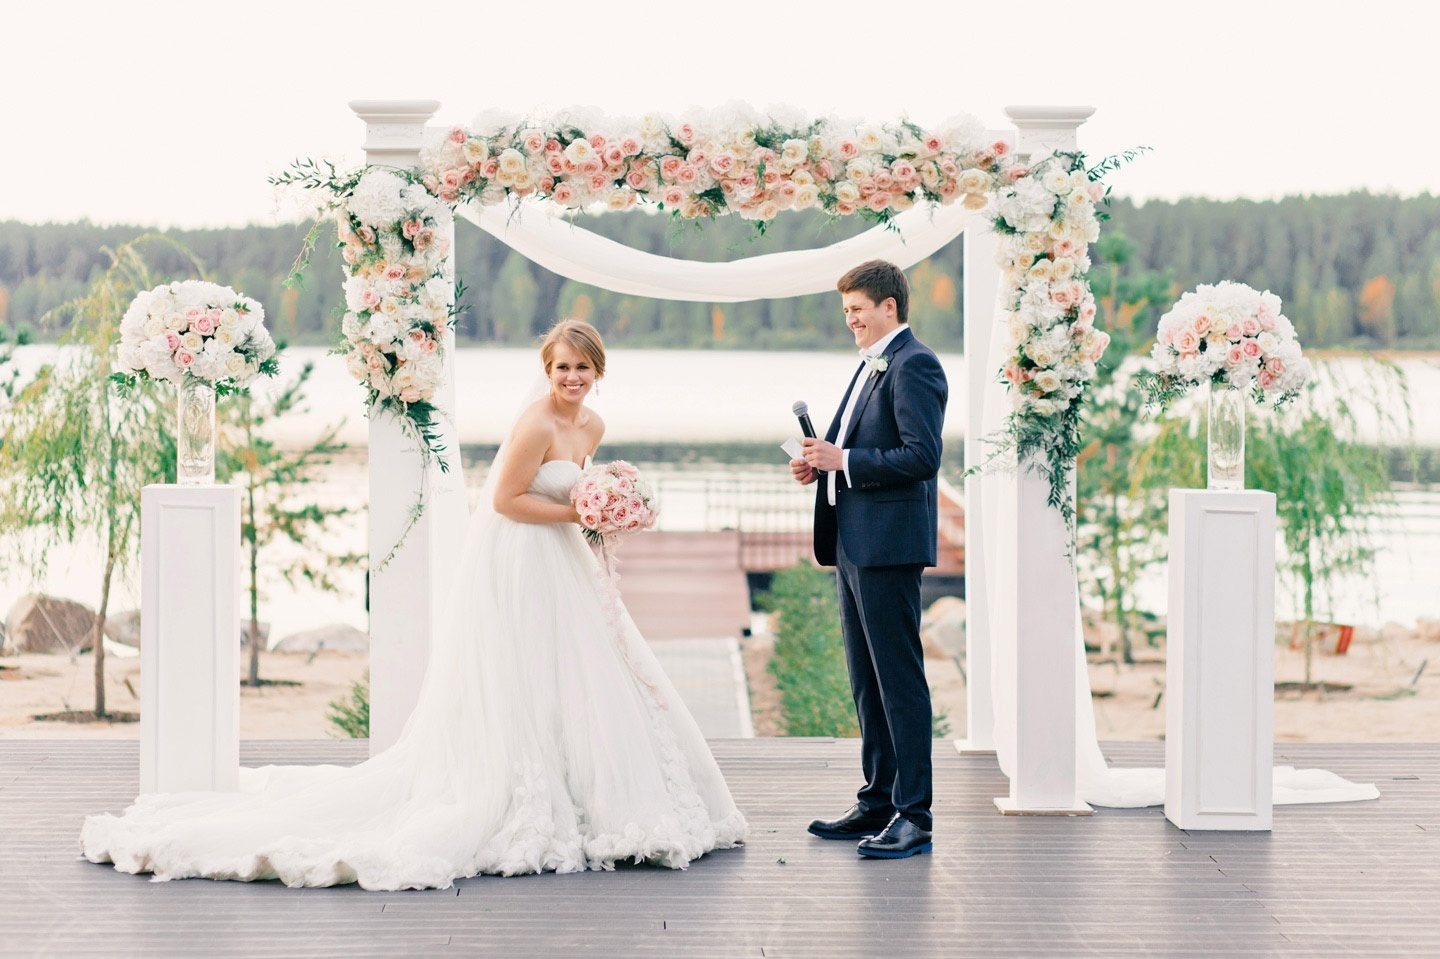 11 мифов о свадебных организаторах